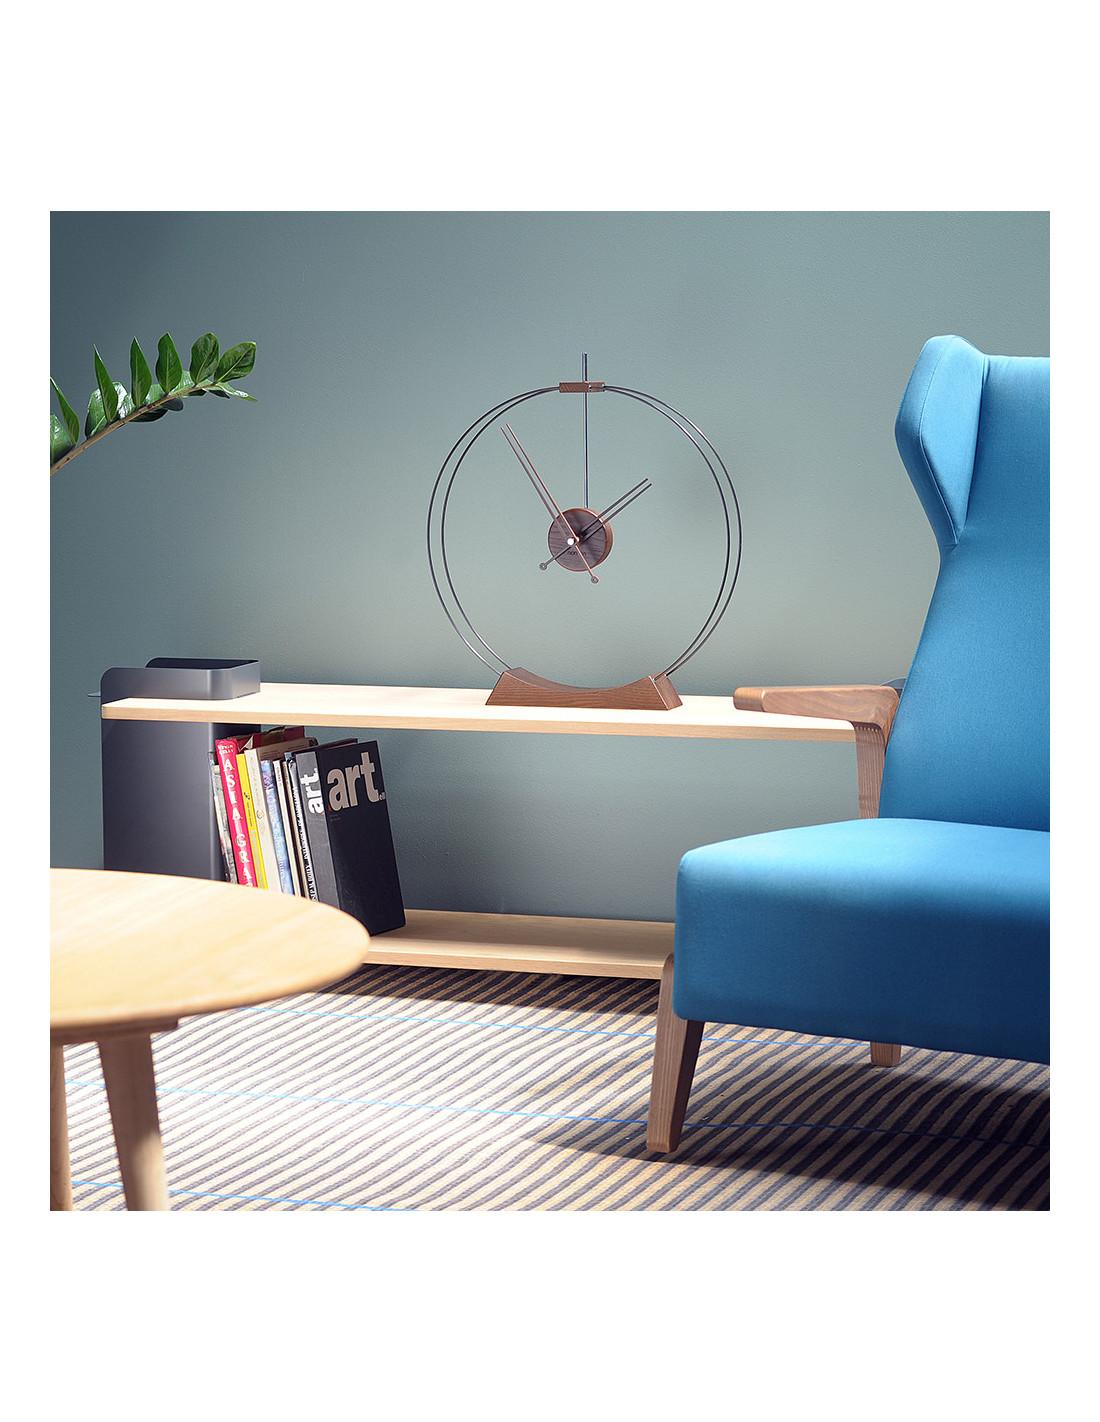 C'est une horloge design qui peut être exposée sur un meuble moderne de style minimaliste. C'est une pièce idéale pour les maisons design, les appartements modernes et les bureaux.
Horloge de table Aire : Fibre de verre noire, bois de frêne avec